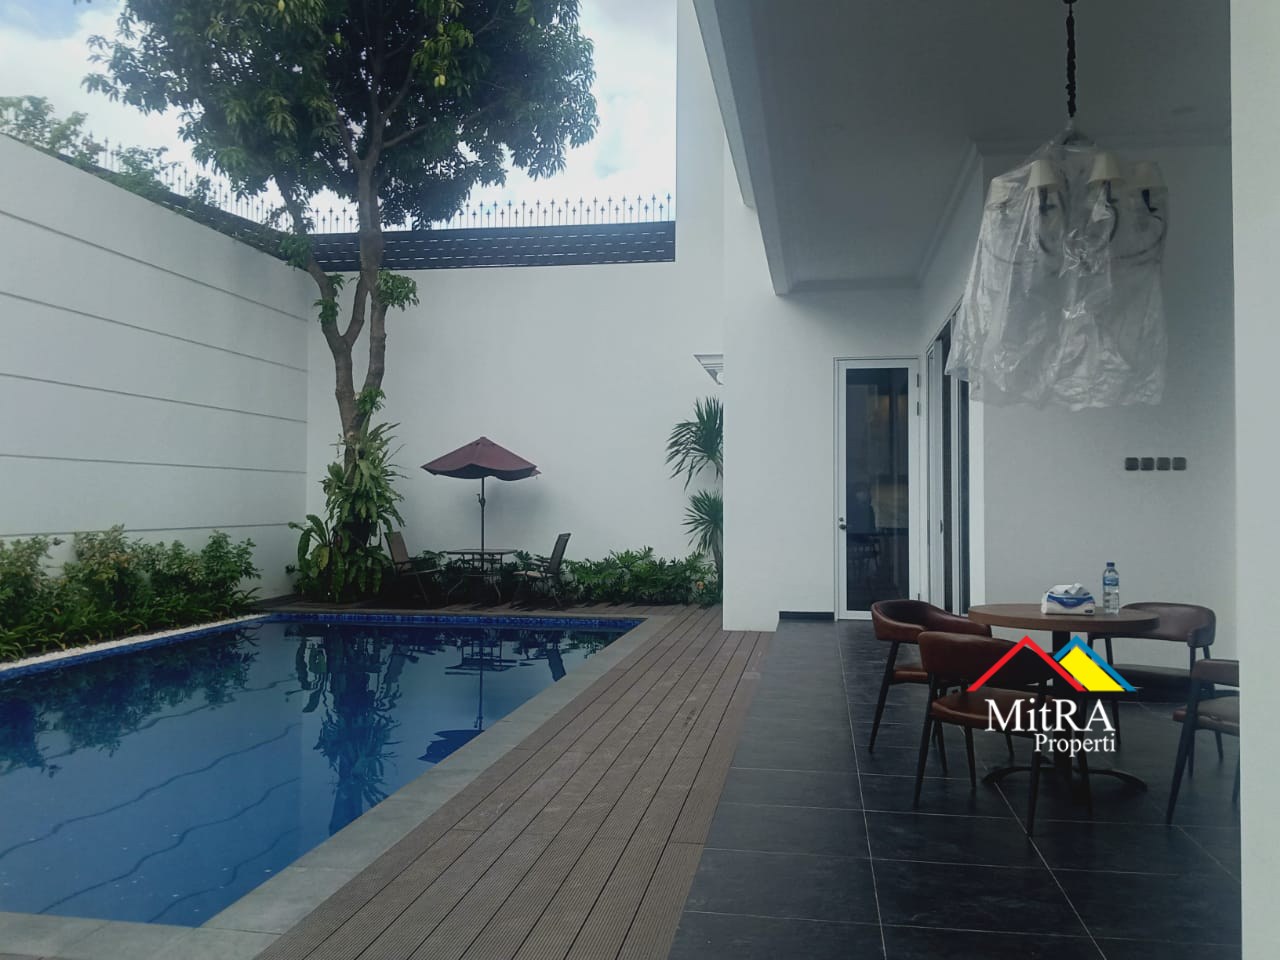 Rumah Super Mewah Classic modern di Pondok Indah Jakarta Selatan - 10